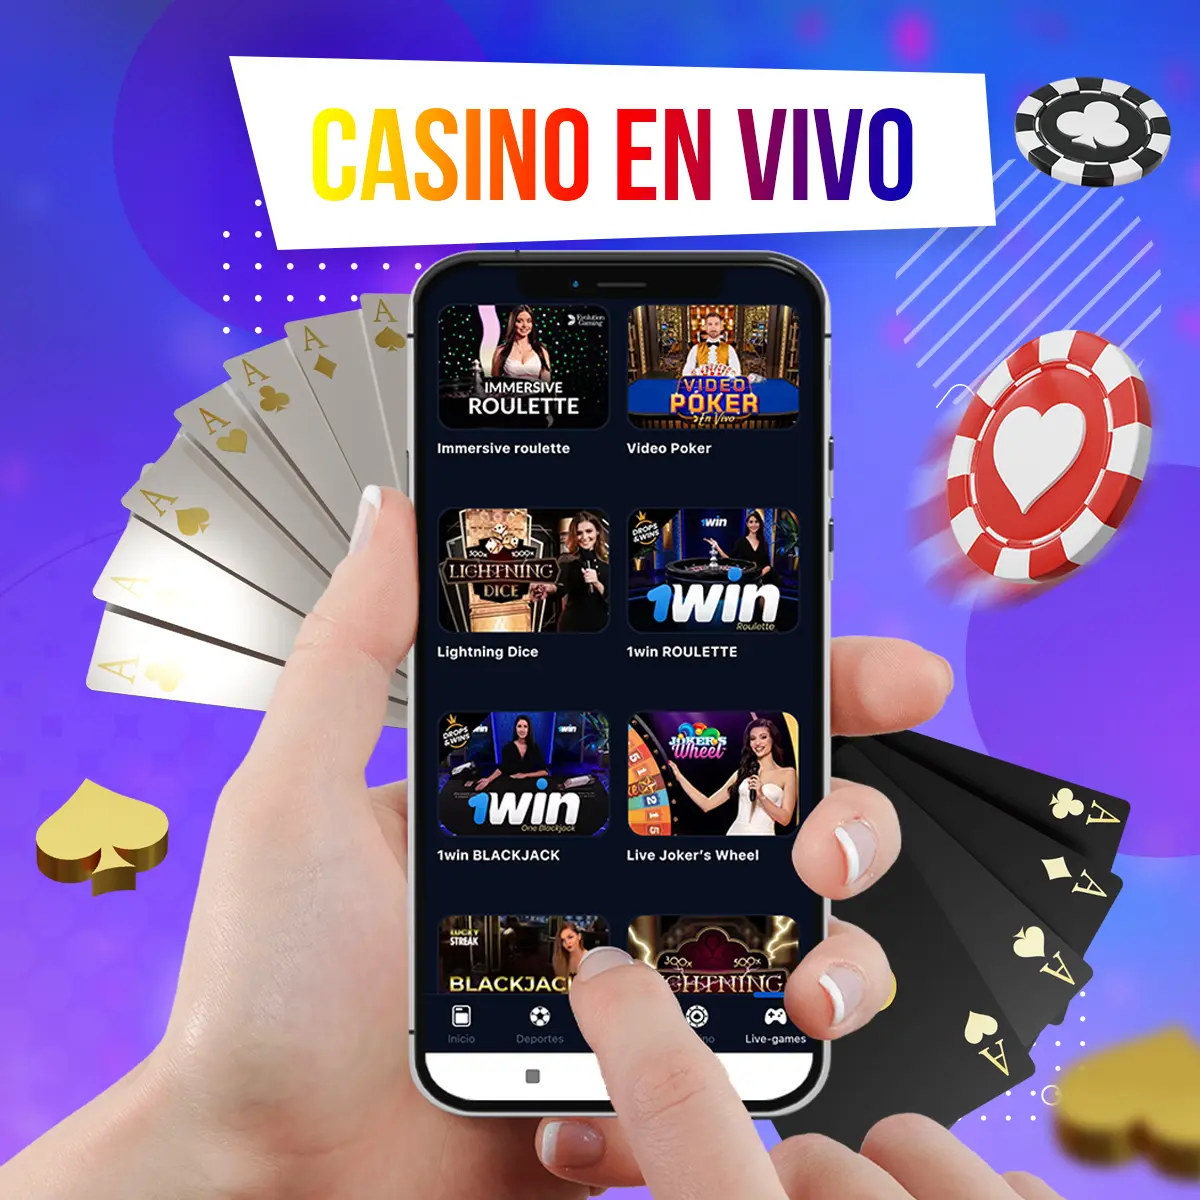 Revisión de los juegos de casino en vivo en la aplicación móvil 1win